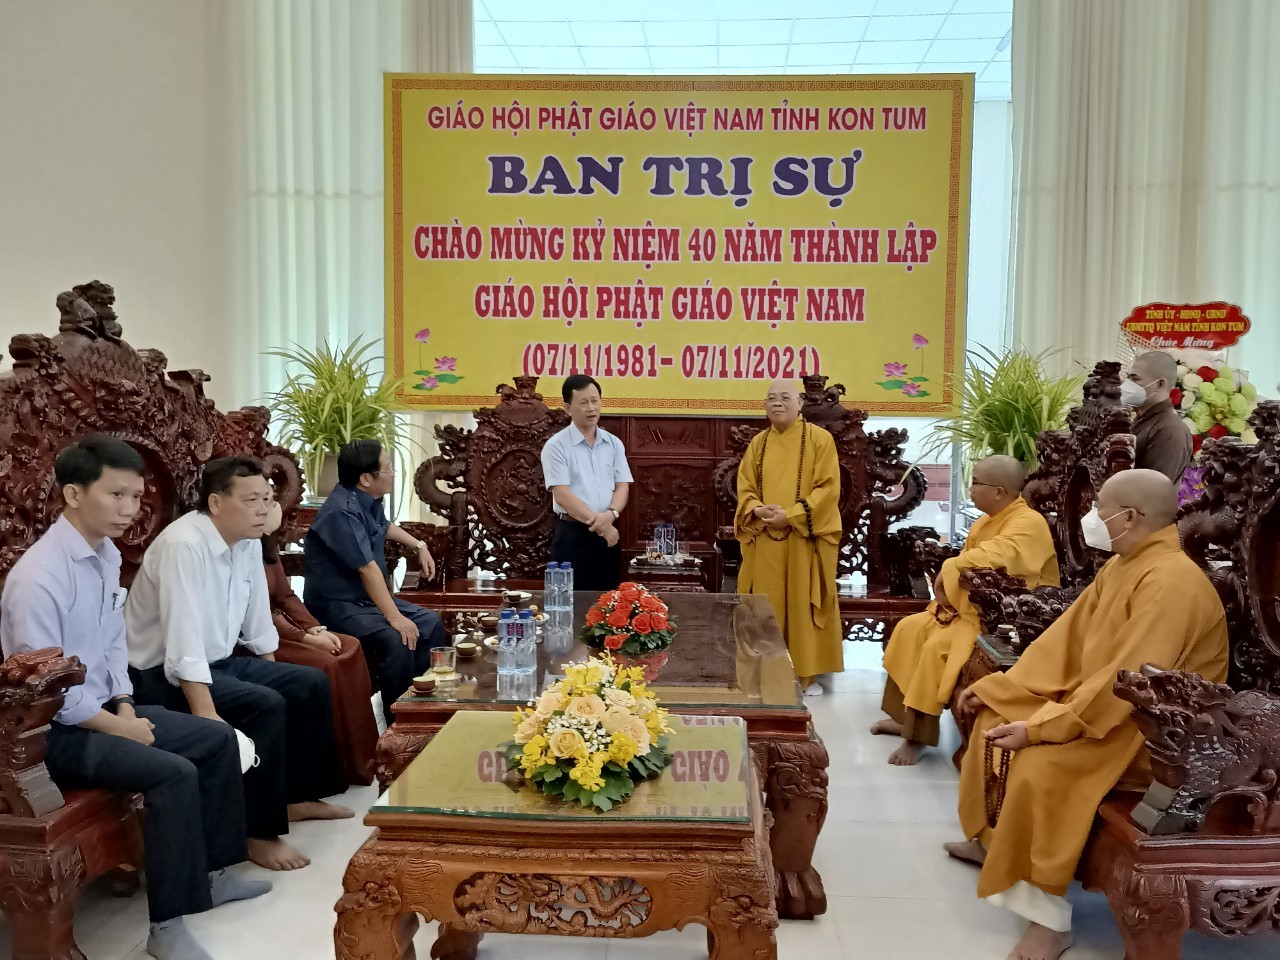 Lãnh đạo tỉnh Kon Tum thăm và chúc mừng Ban Trị sự GHPGVN tỉnh Kon Tum nhân dịp kỷ niệm 40 năm thành lập Giáo hội Phật giáo Việt Nam